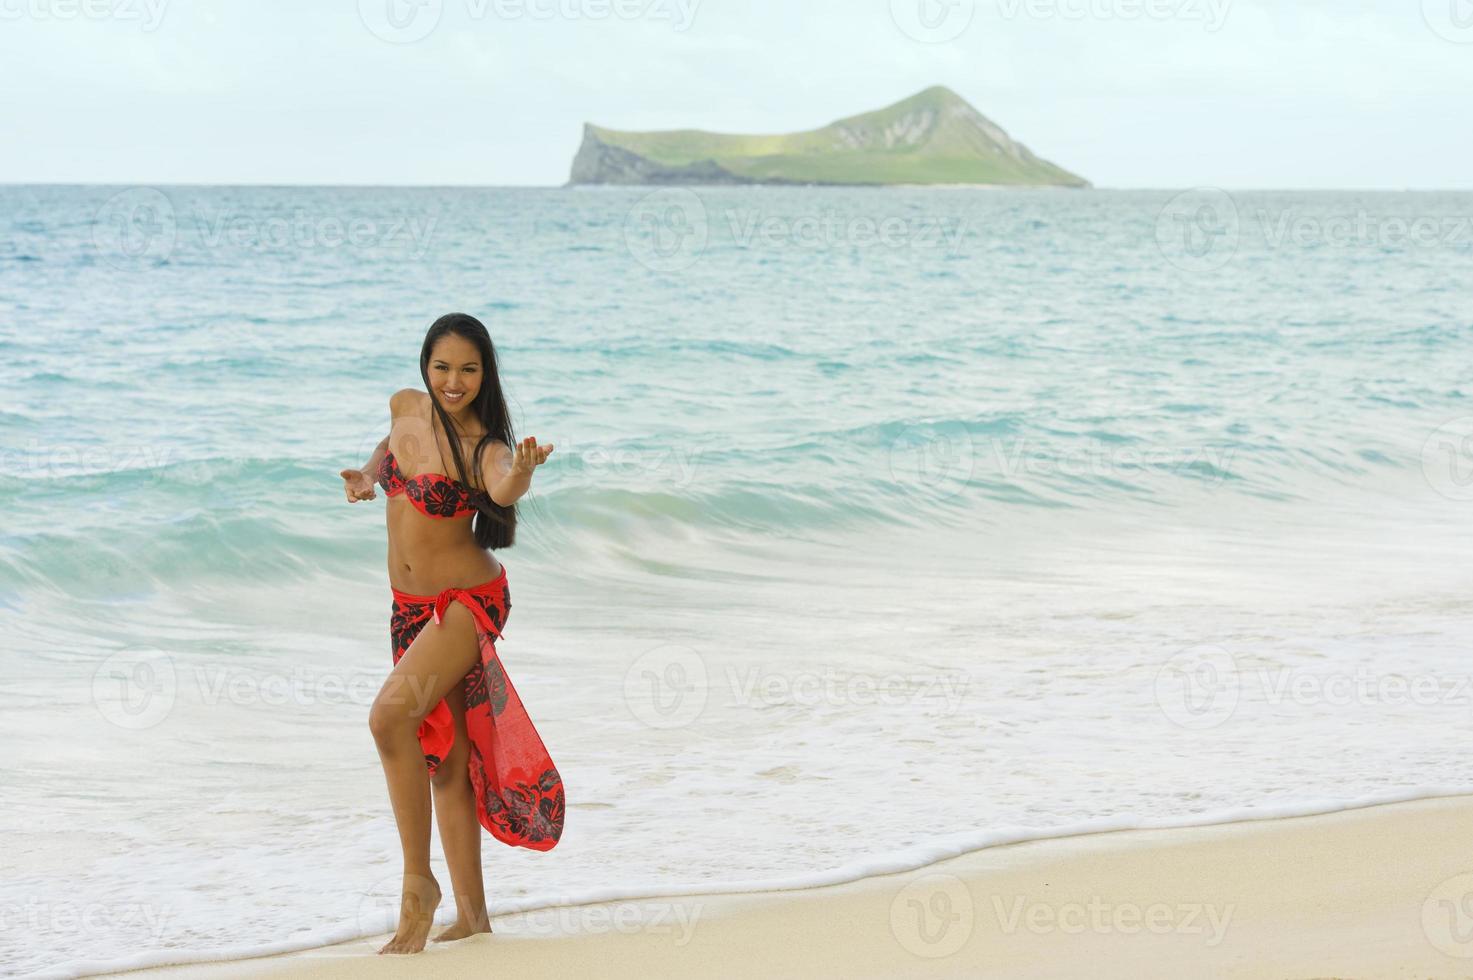 Hawaiin Dancer photo